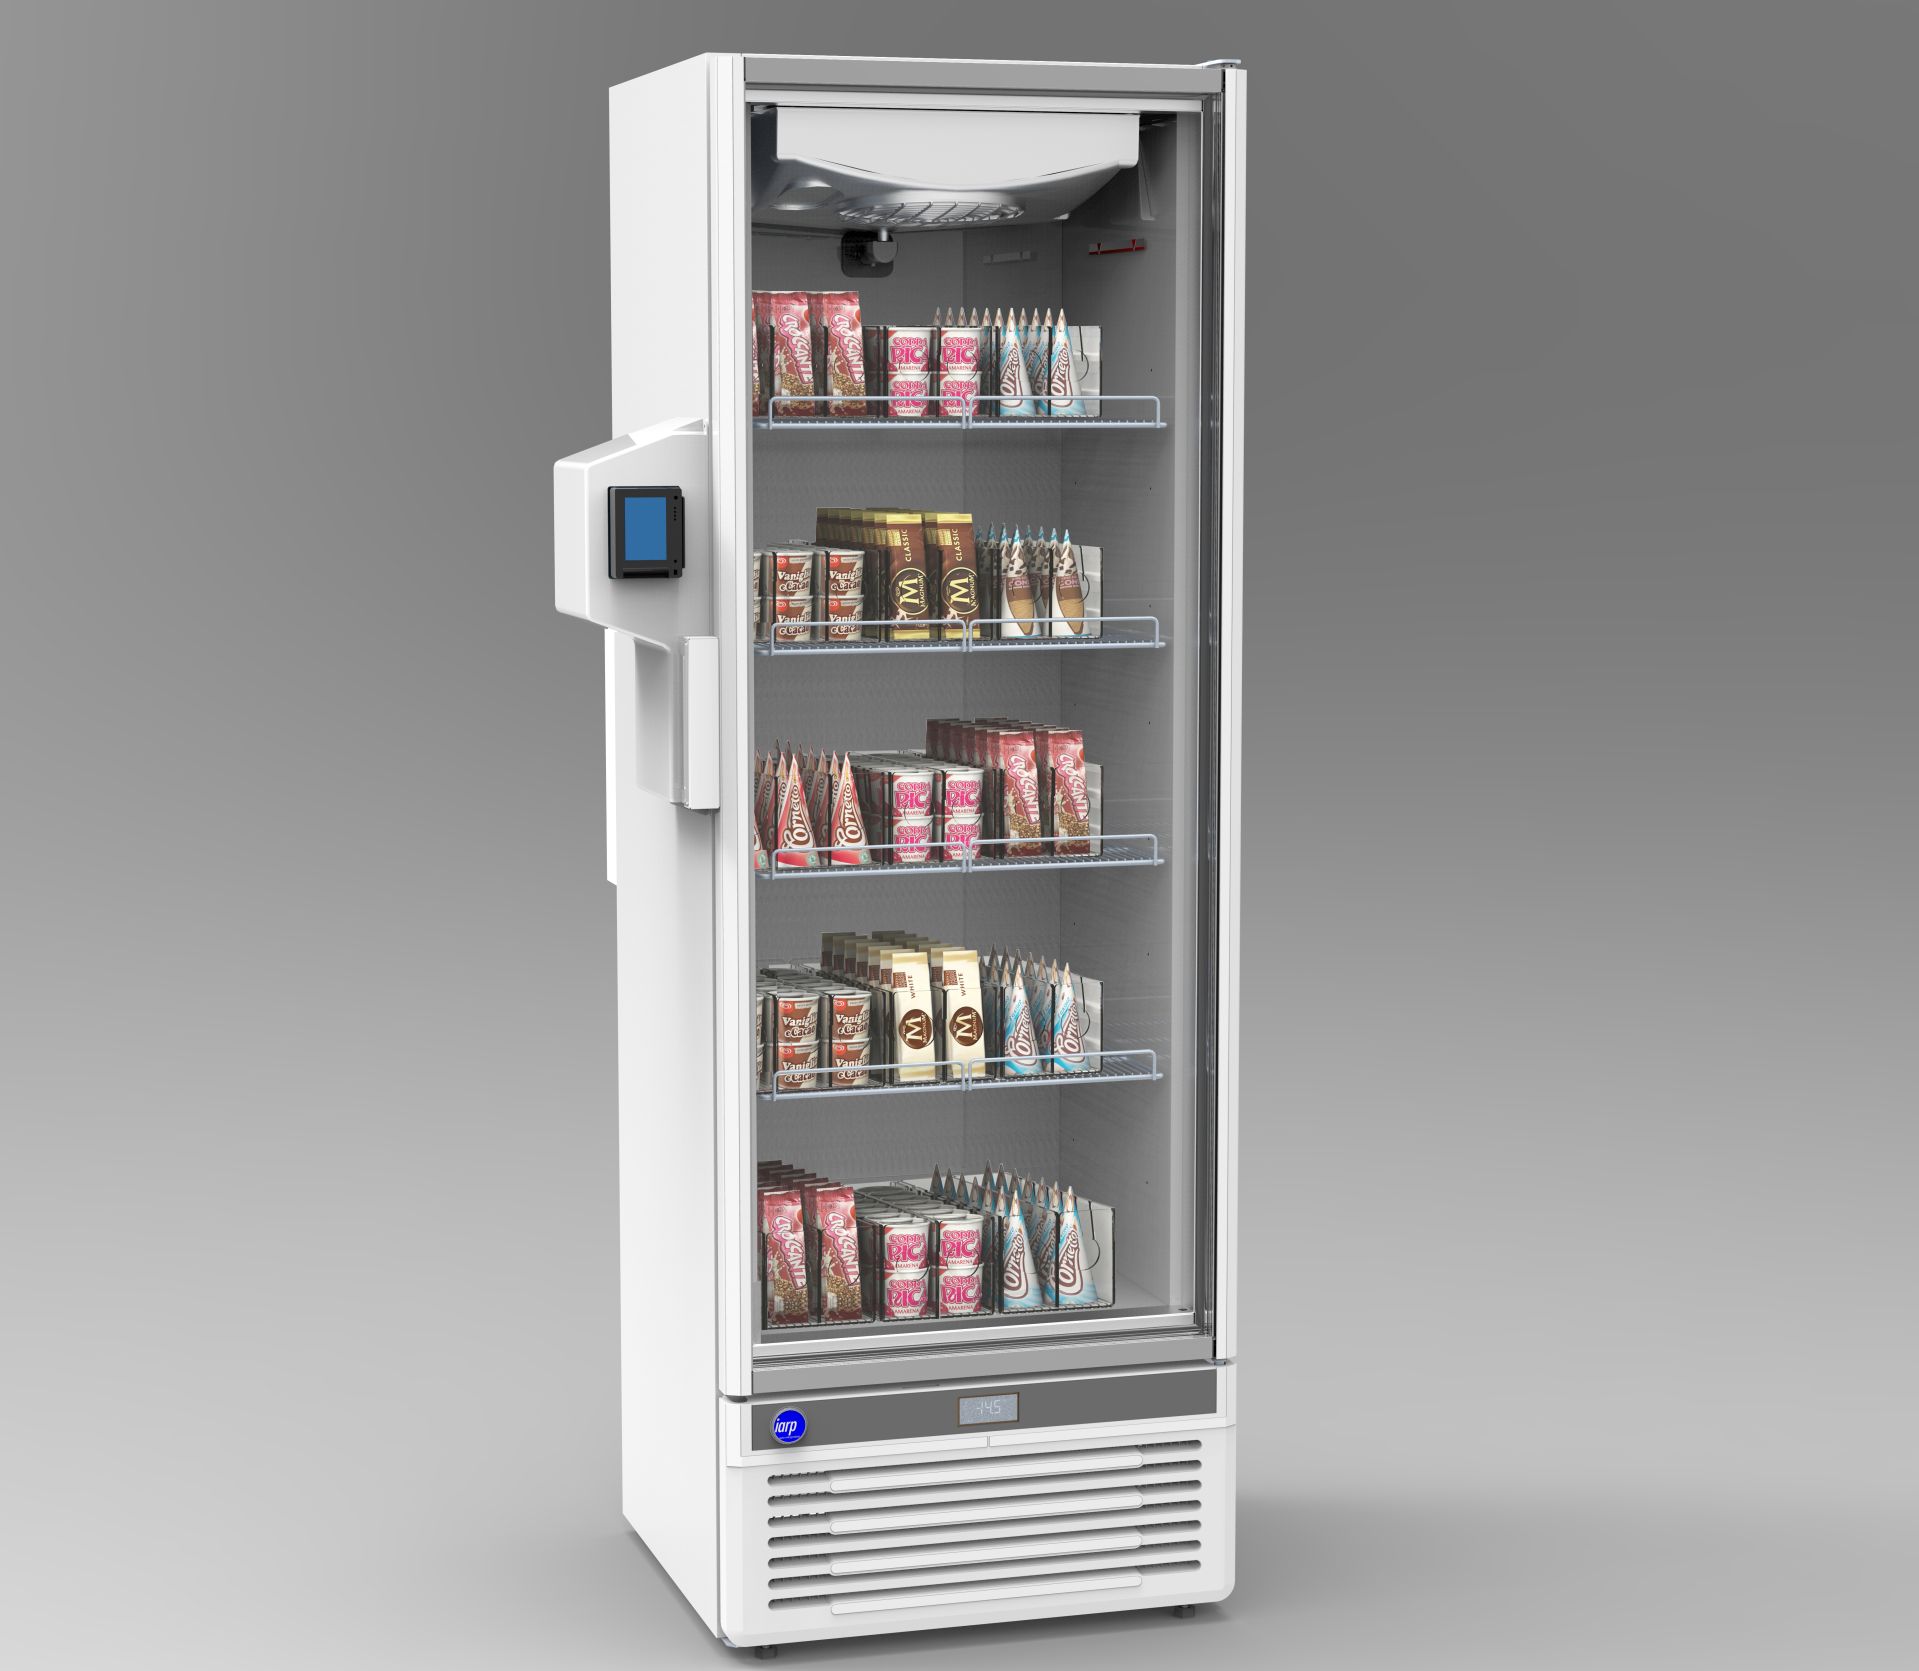 E-frigo - E-thik I Distributeurs automatiques nouvelle génération